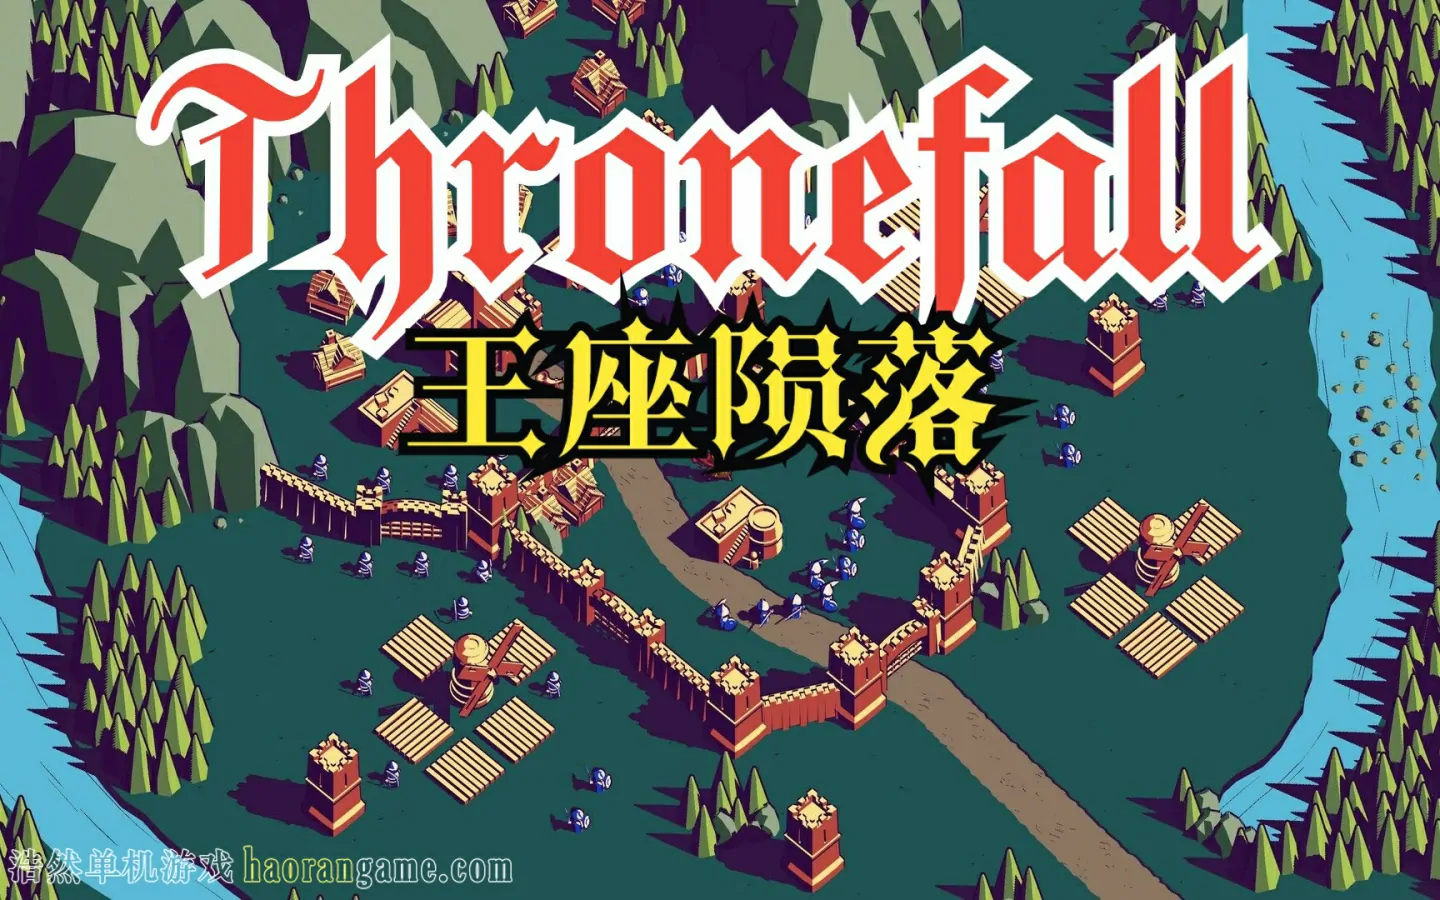 《王座陨落 Thronefall》官方中文版-浩然单机游戏 | haorangame.com